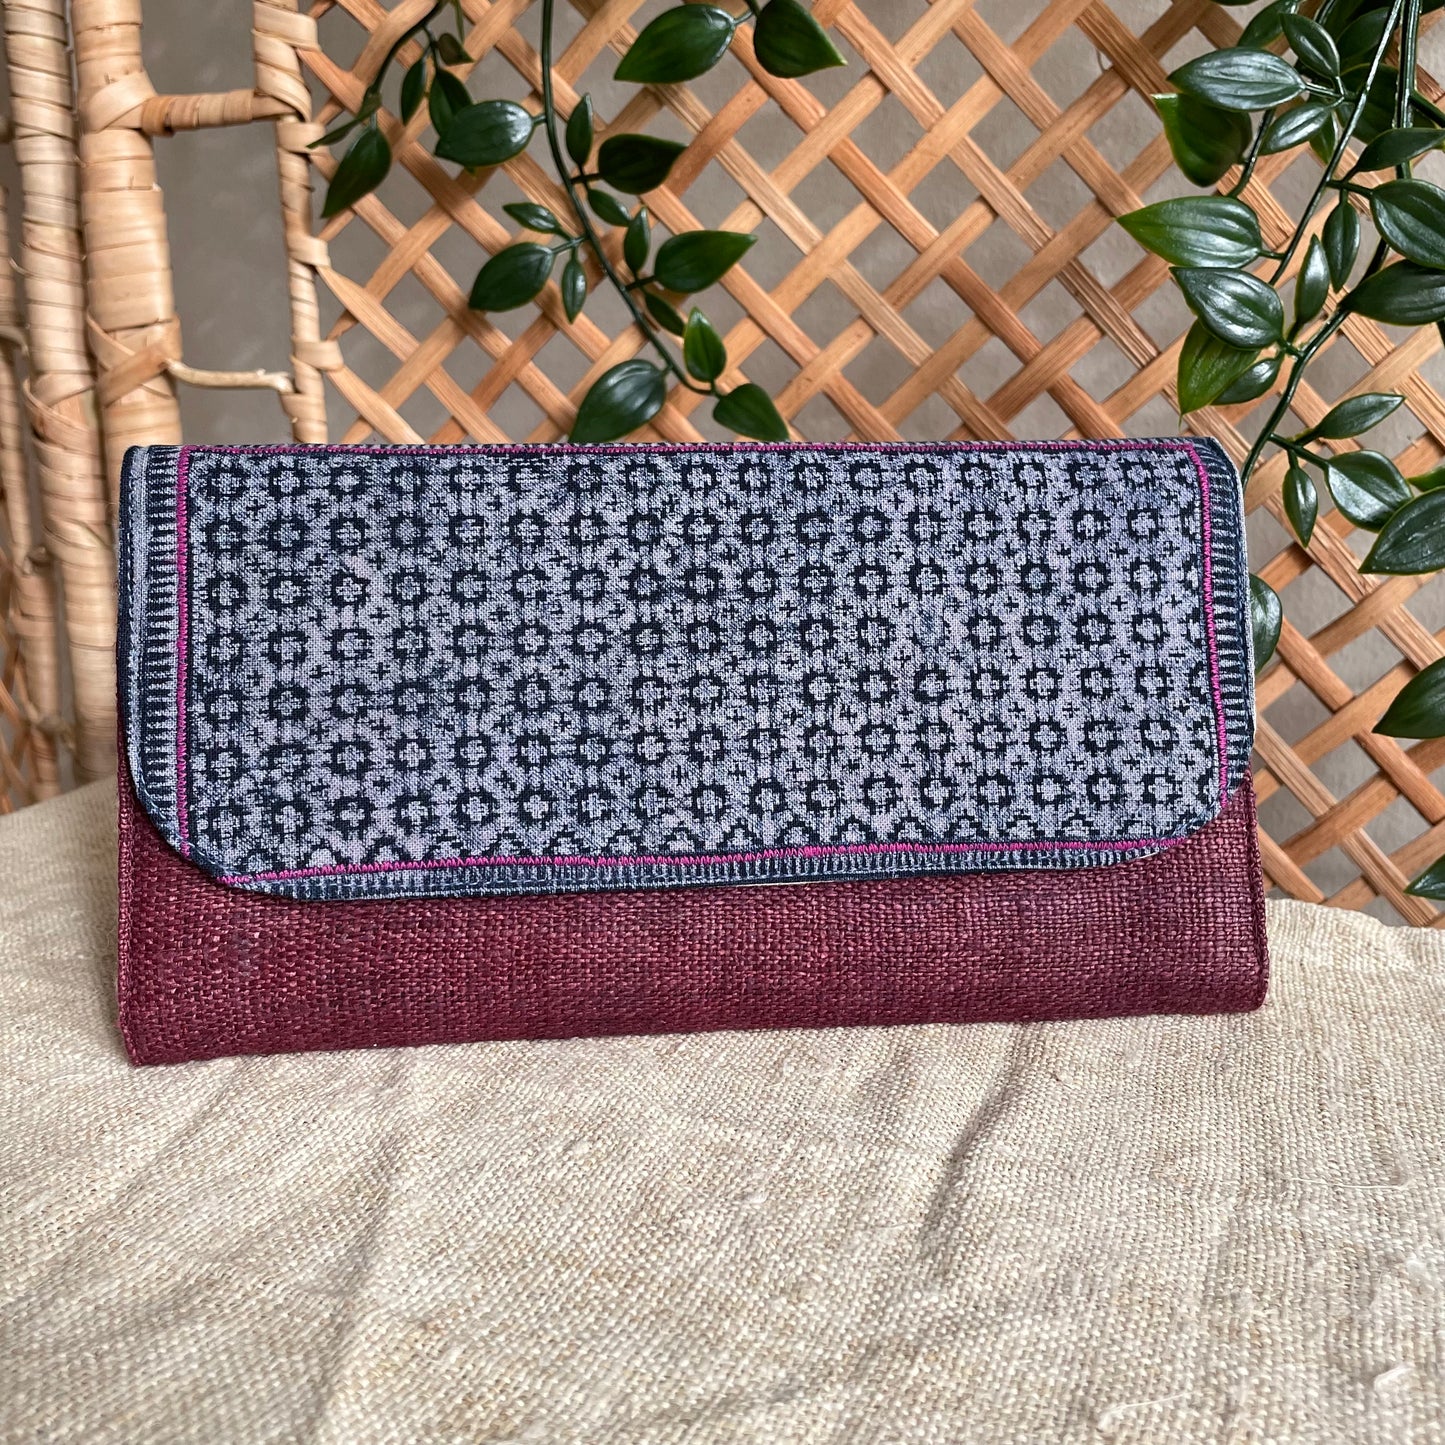 Bordeaux long purse, Hemp fabric, Indigo Batik fabric, H'mong pattern